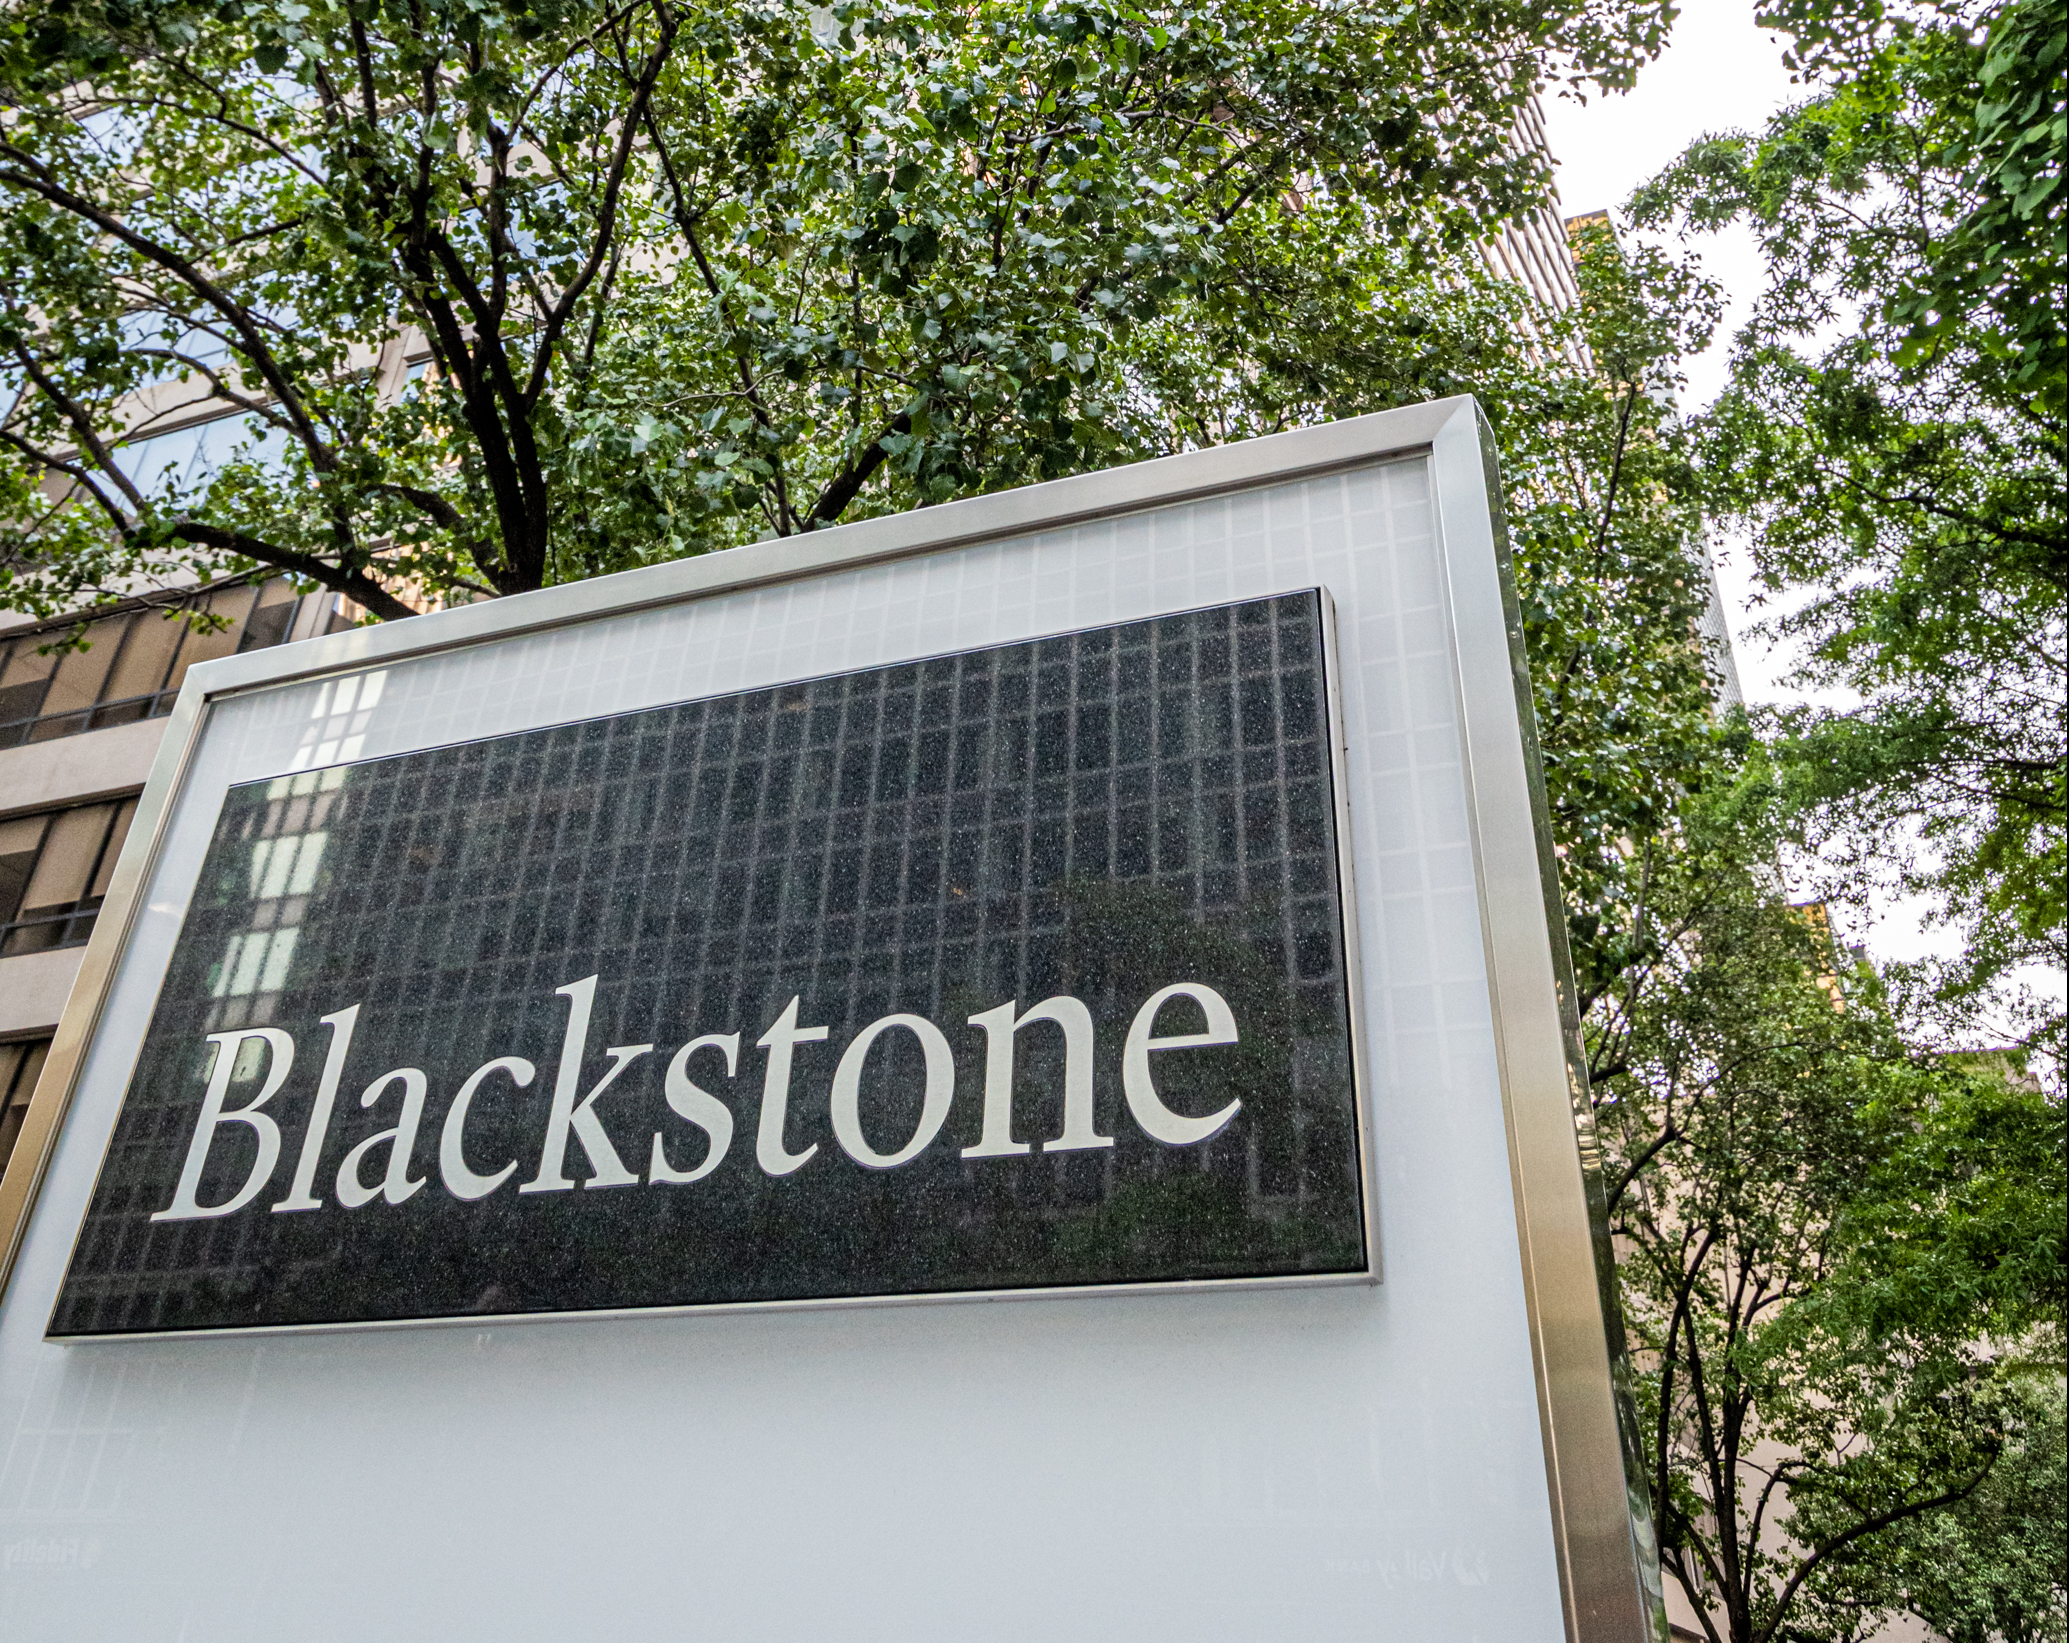 Blackstone Blackstone Blackstone Blackstone Blackstone Blackstone Blackstone Blackstone Blackstone B